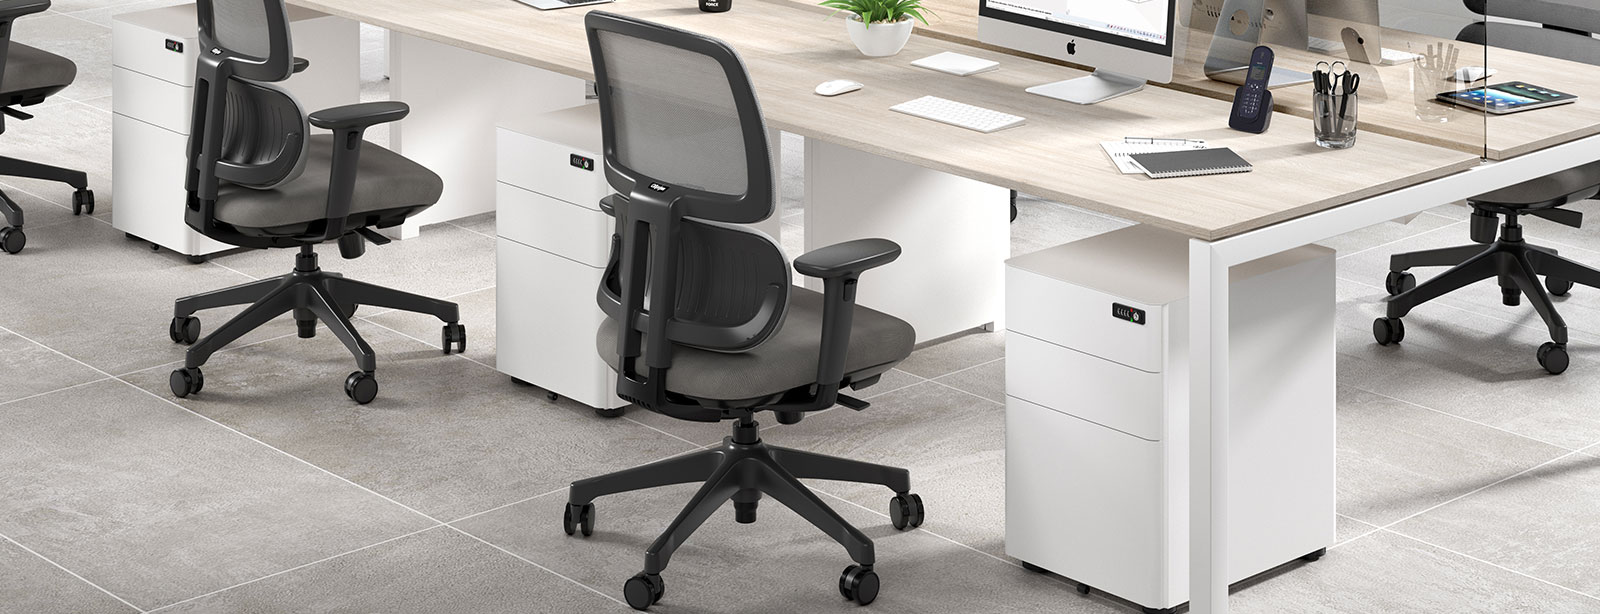 Escoger una silla de escritorio cómoda